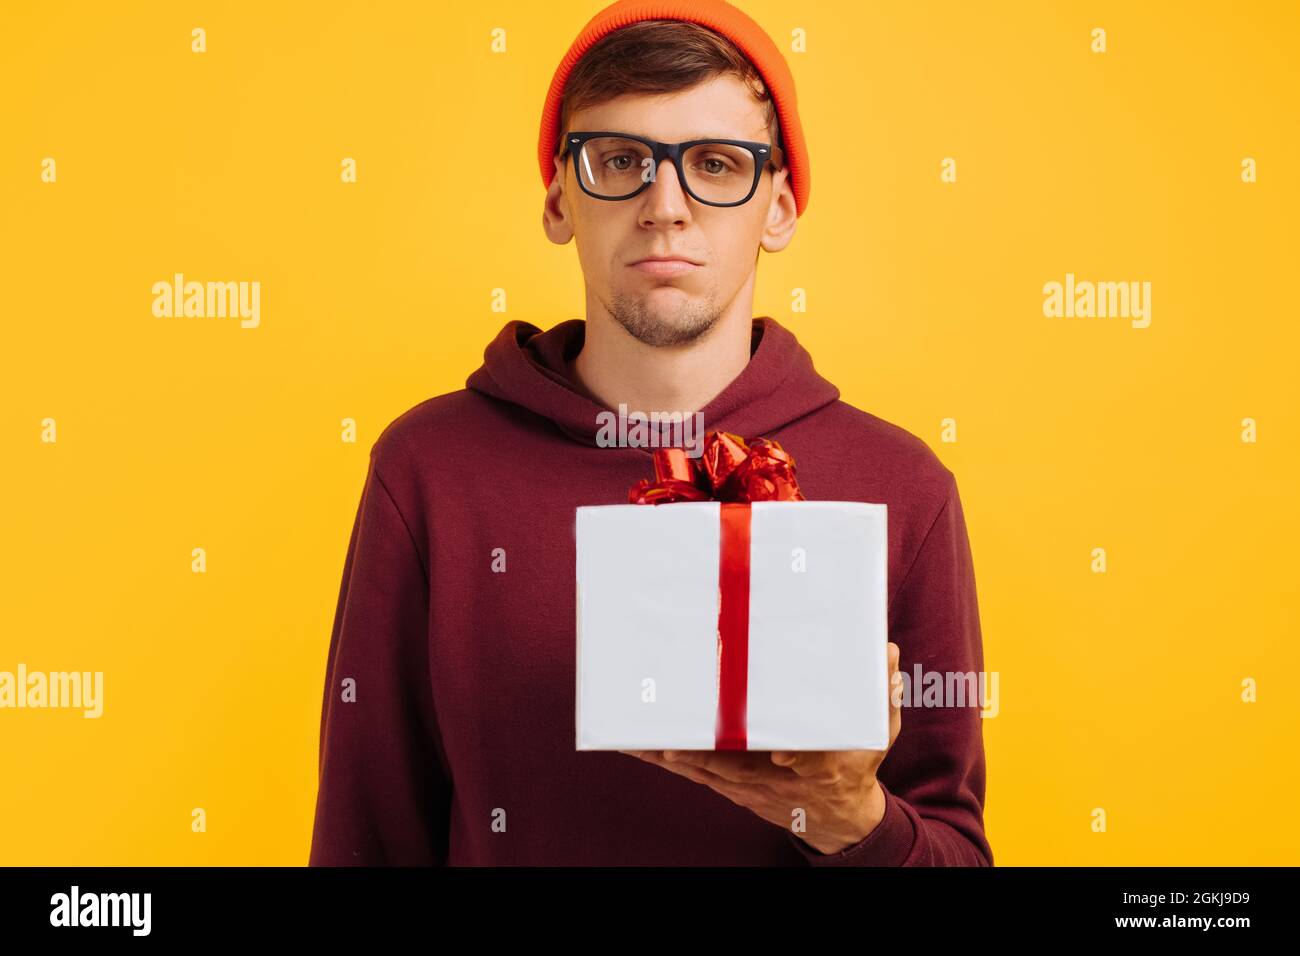 un chico joven infeliz con un sombrero naranja con gafas y un suéter rojo  no está contento con su regalo, humor festivo, regalos de año nuevo  Fotografía de stock - Alamy